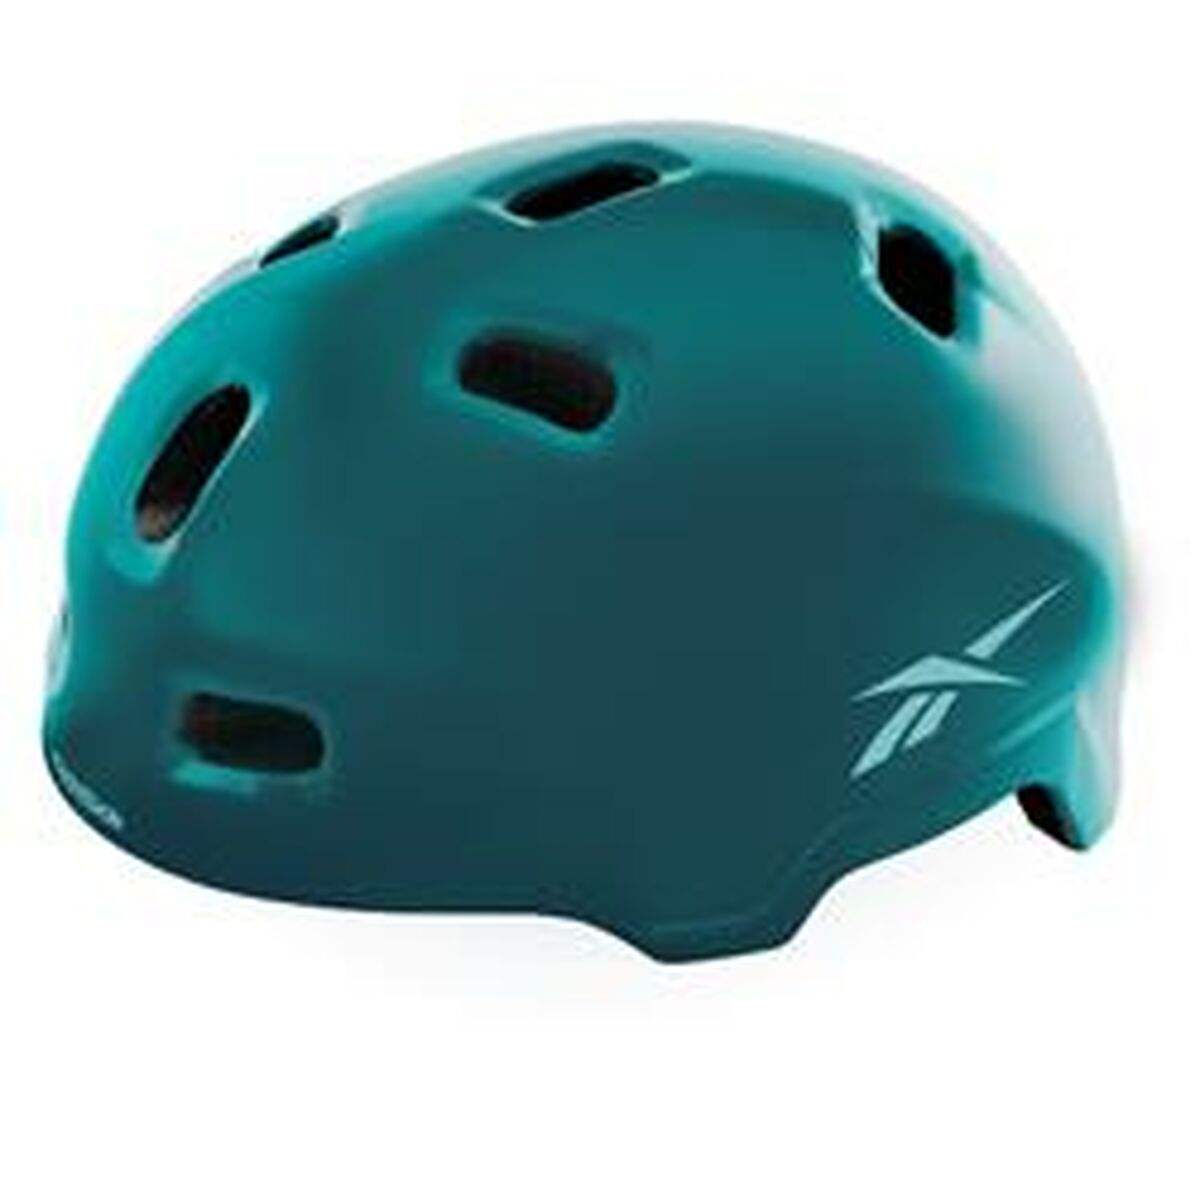 Helm für Elektroroller Reebok RK-HFREEMTV25M-G grün